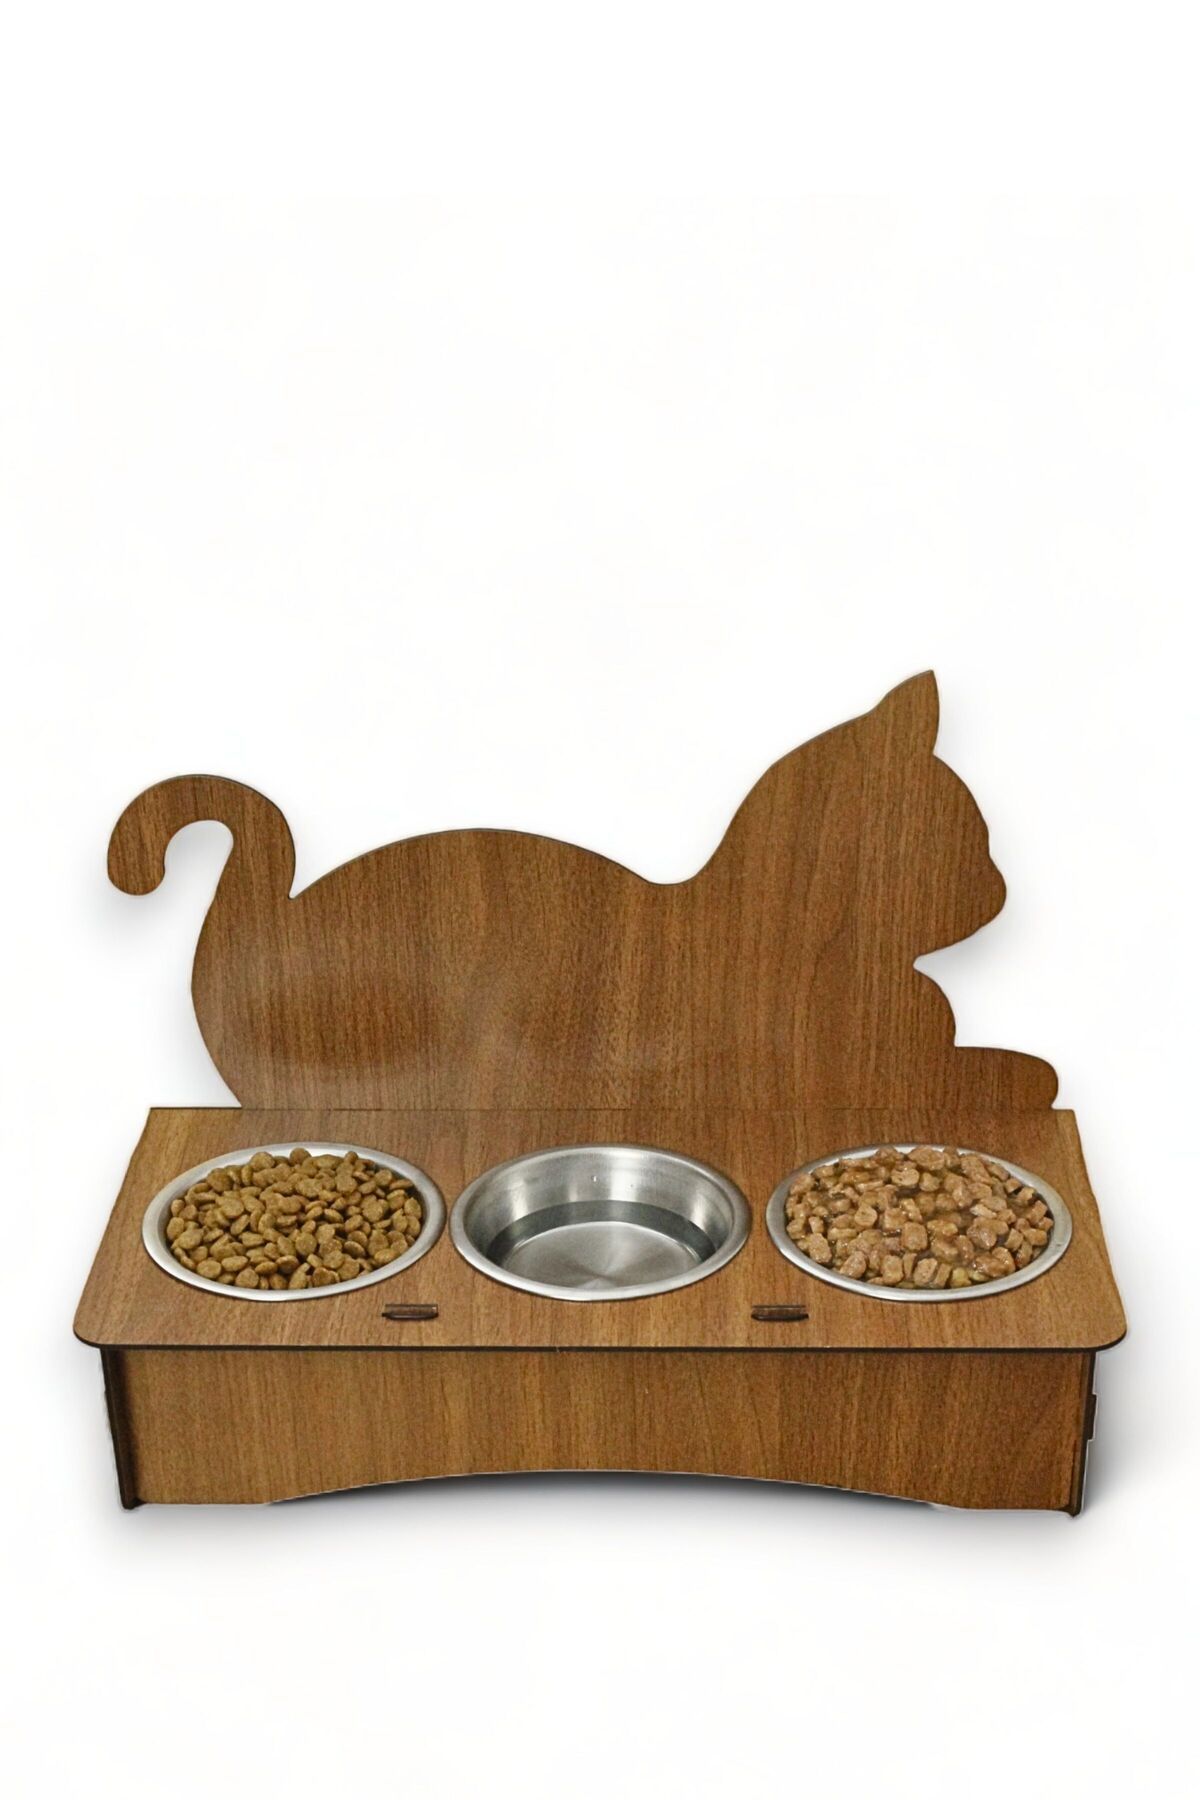 Evene Kedi Mama Kabı Kedi Su Kabı Kedi Mama ve Su Kabı Kedi Yemek Kabı 3 Çelik Kase Model 4 Ceviz